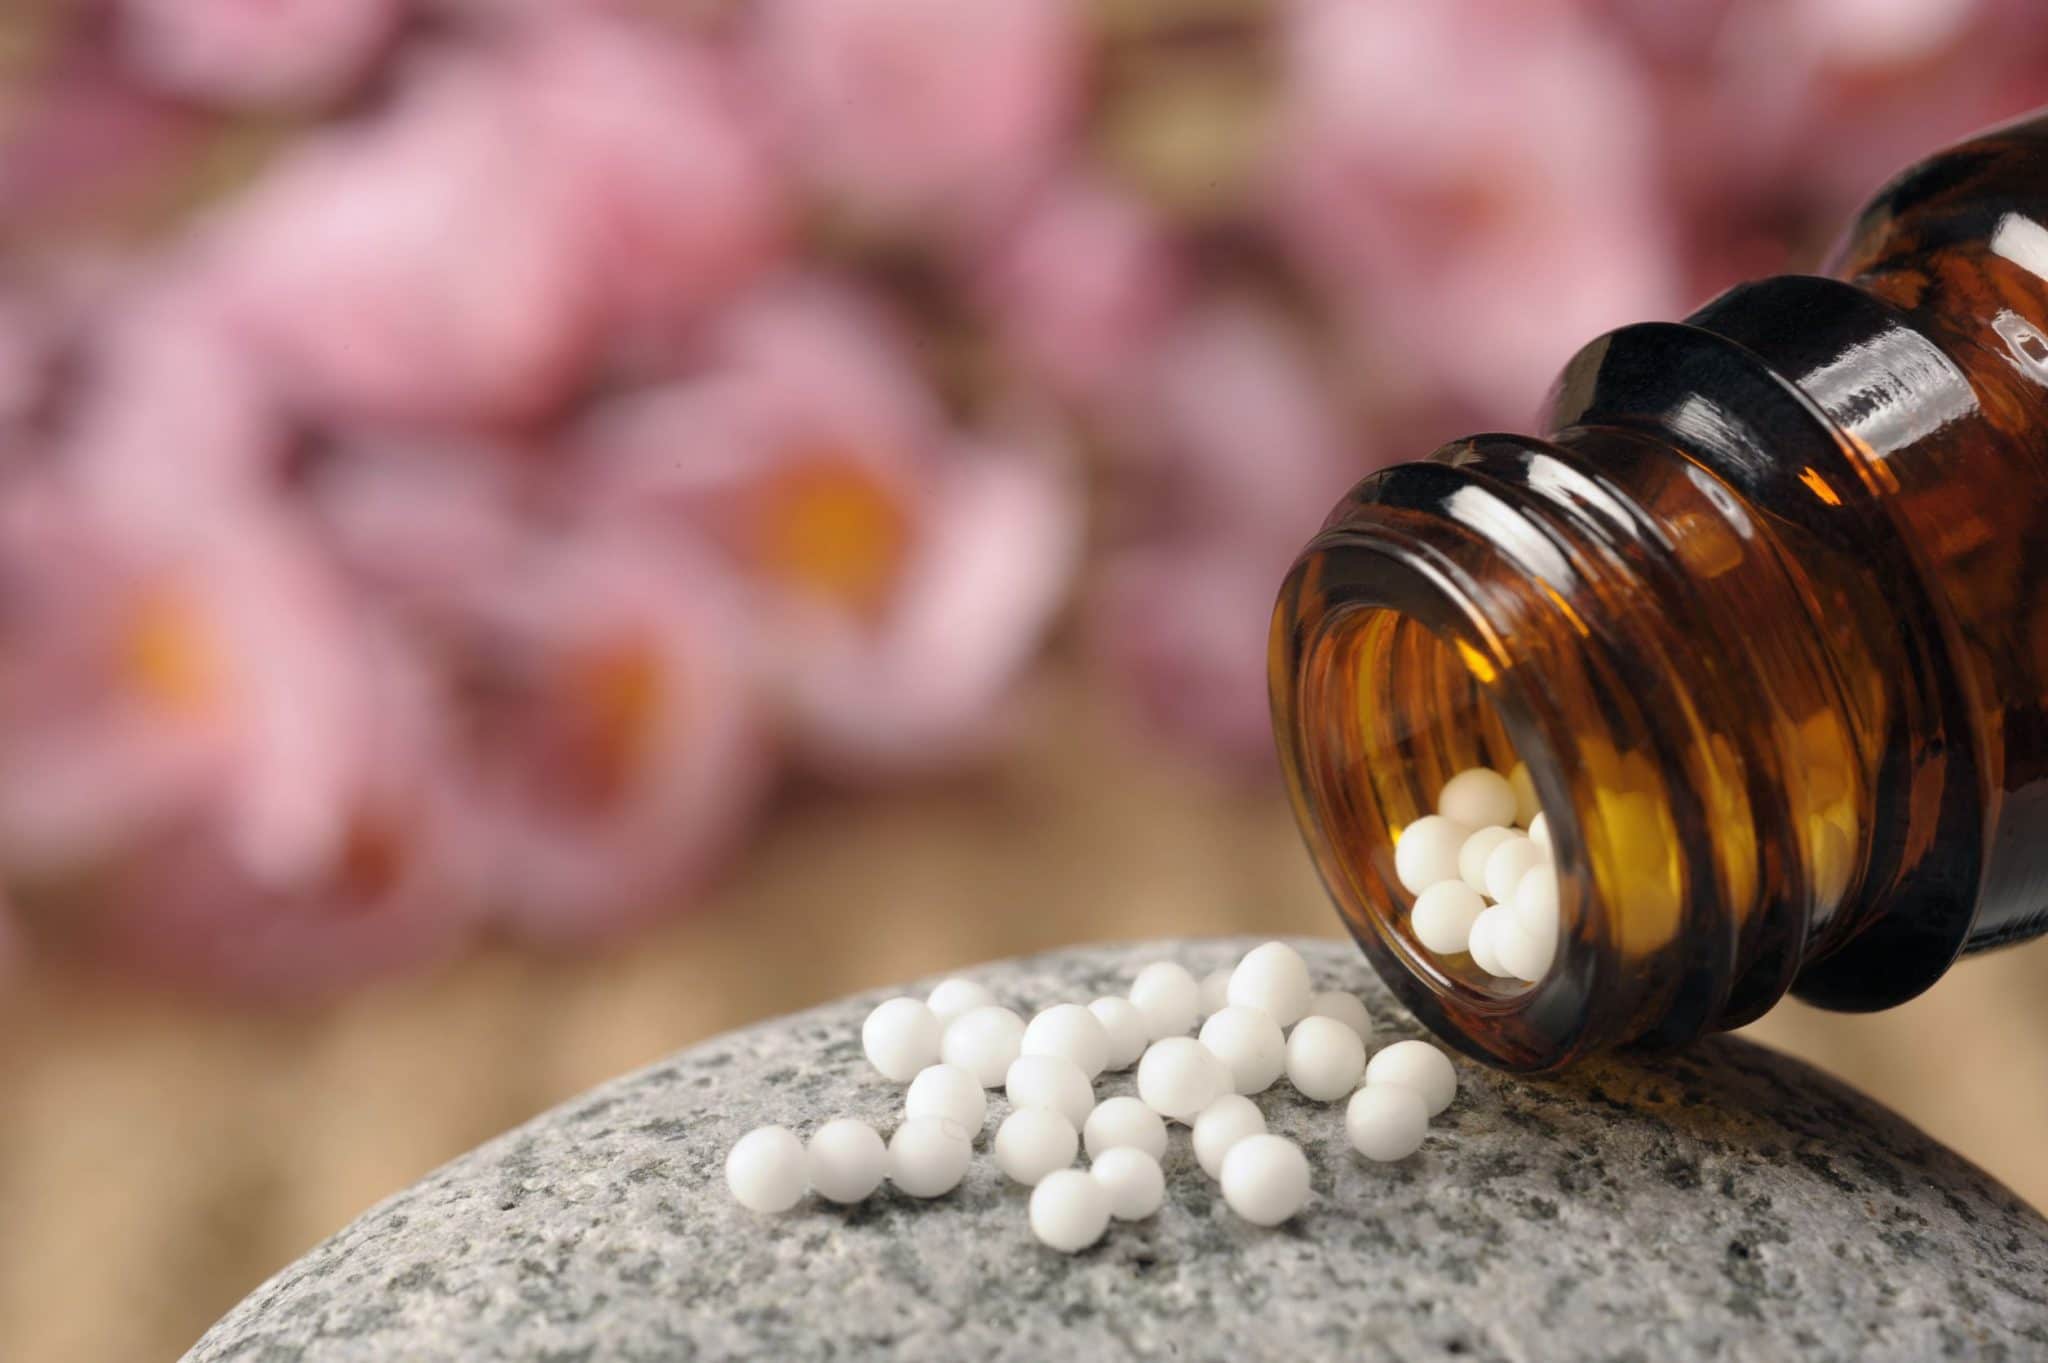 Homeopatia o que é e como funciona? Saiba mais aqui!